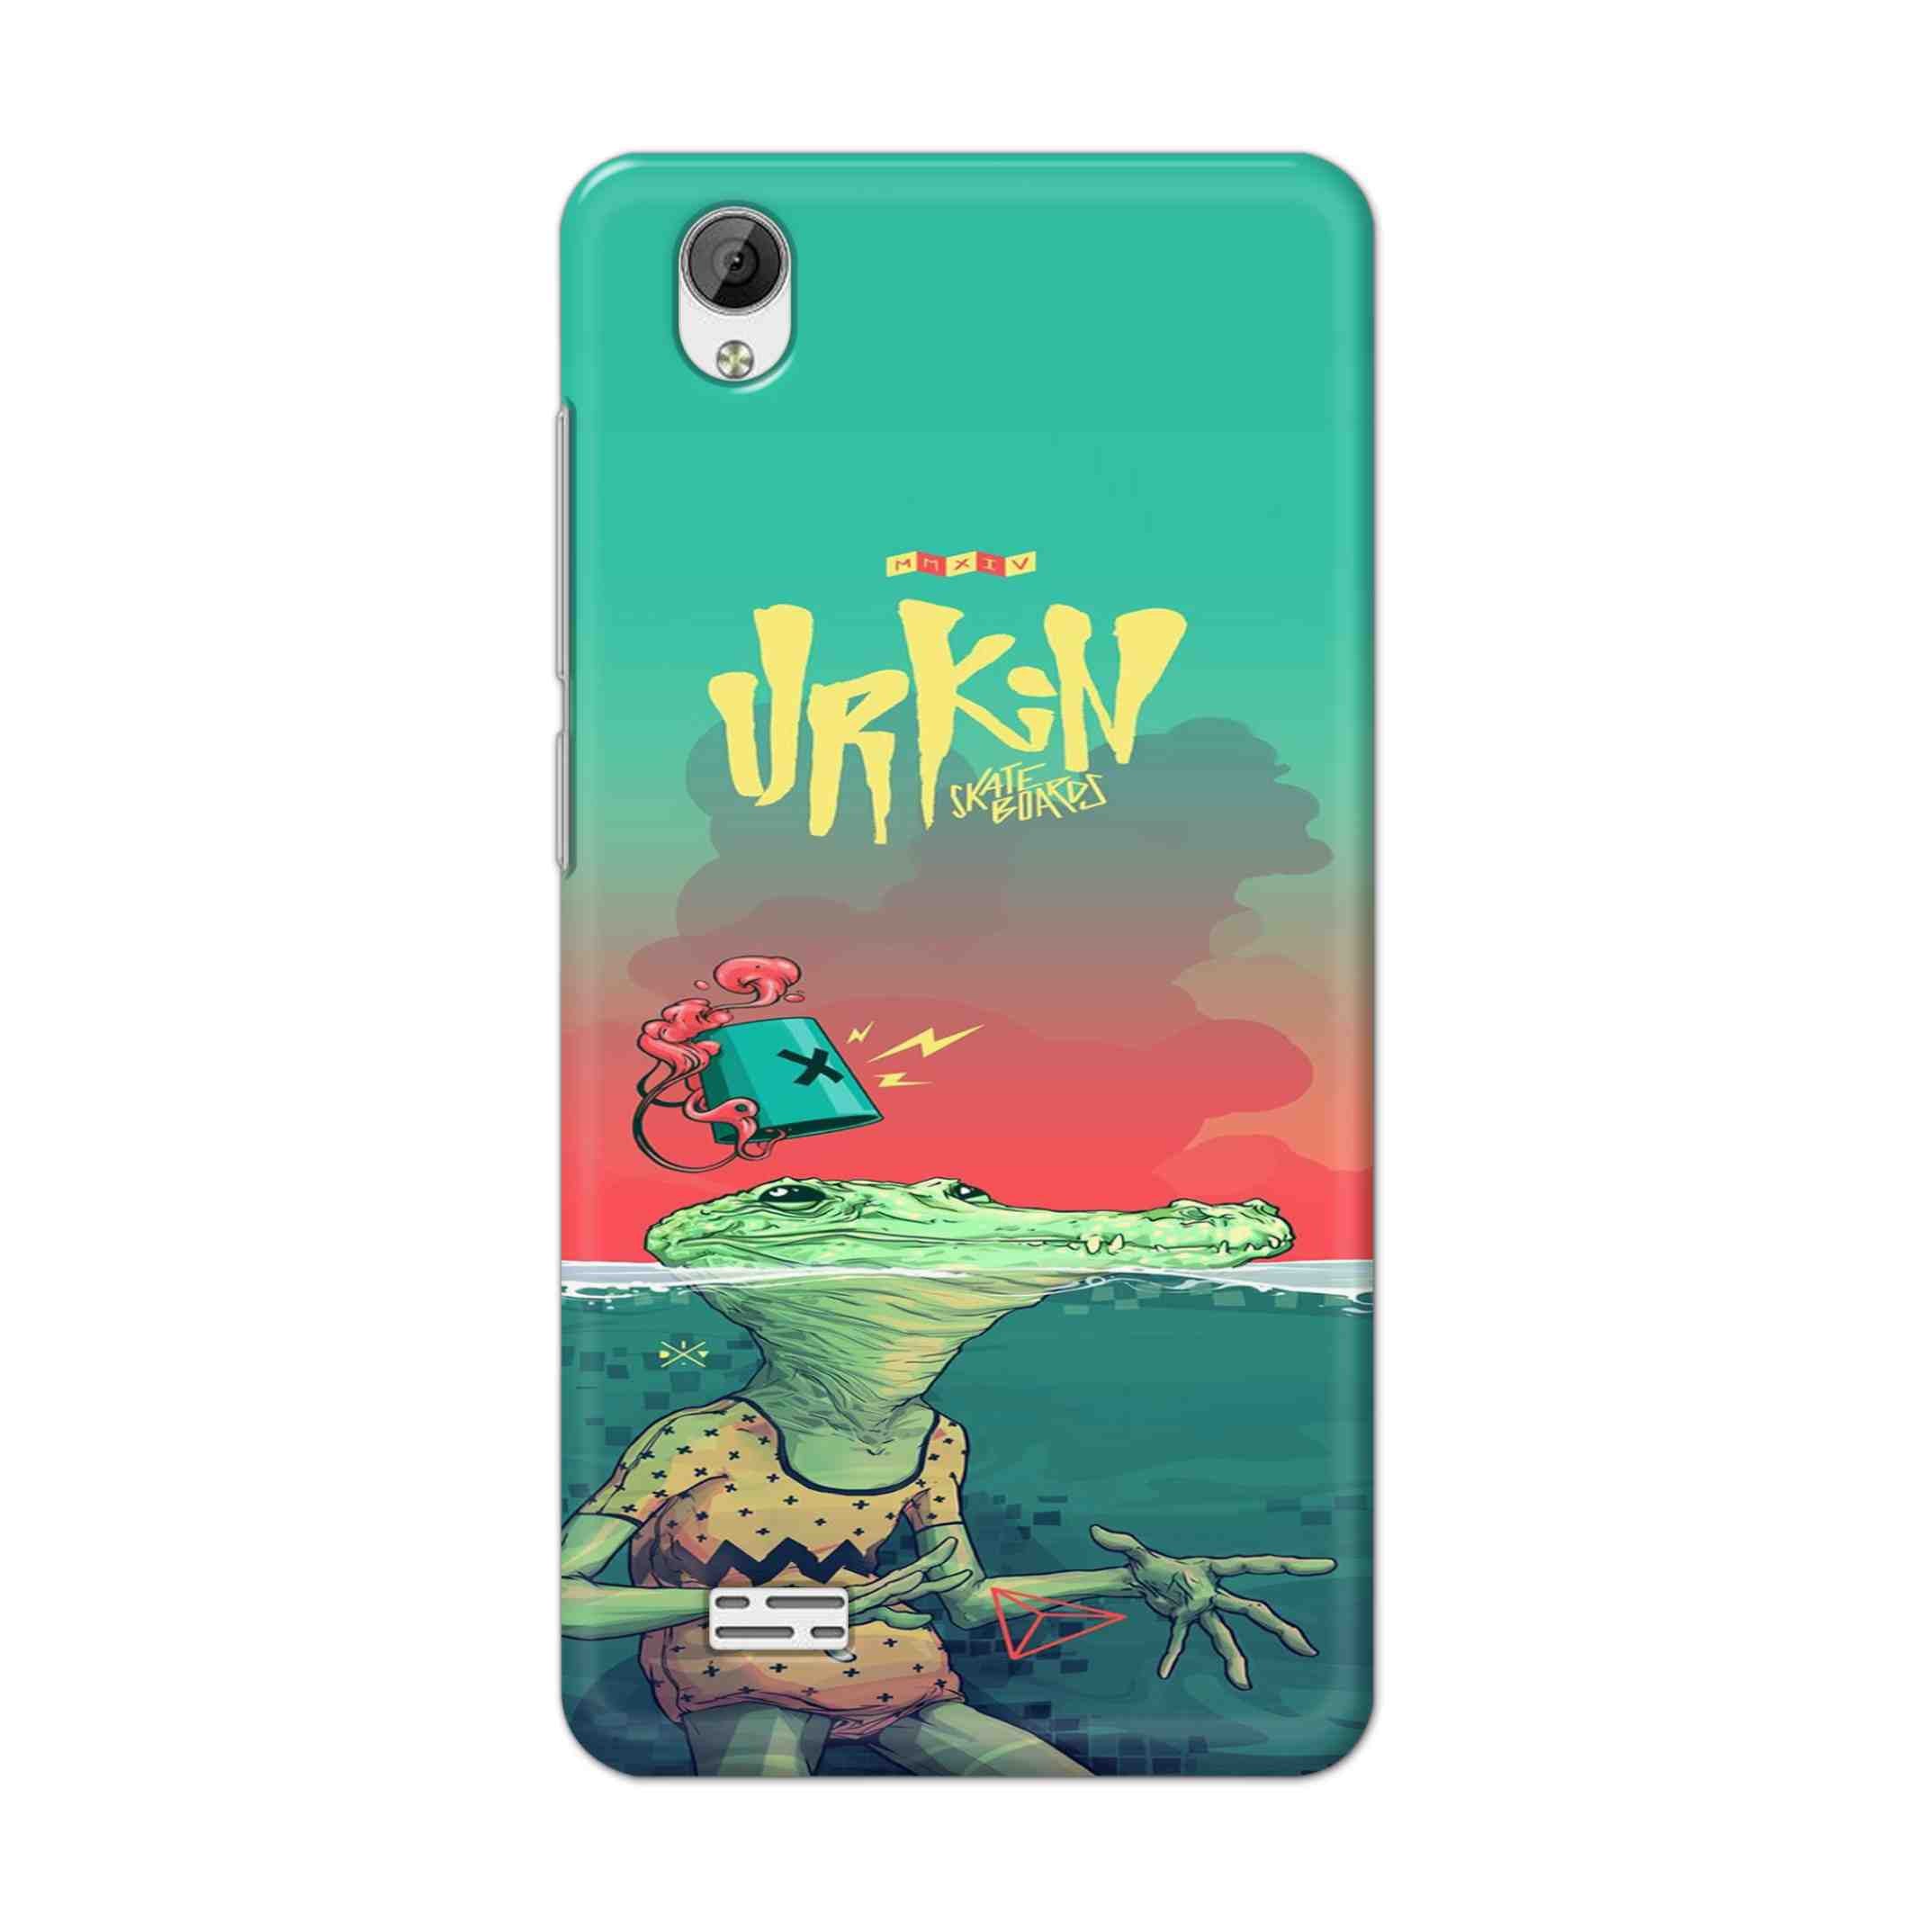 Buy Urkin Hard Back Mobile Phone Case Cover For Vivo Y31 Online